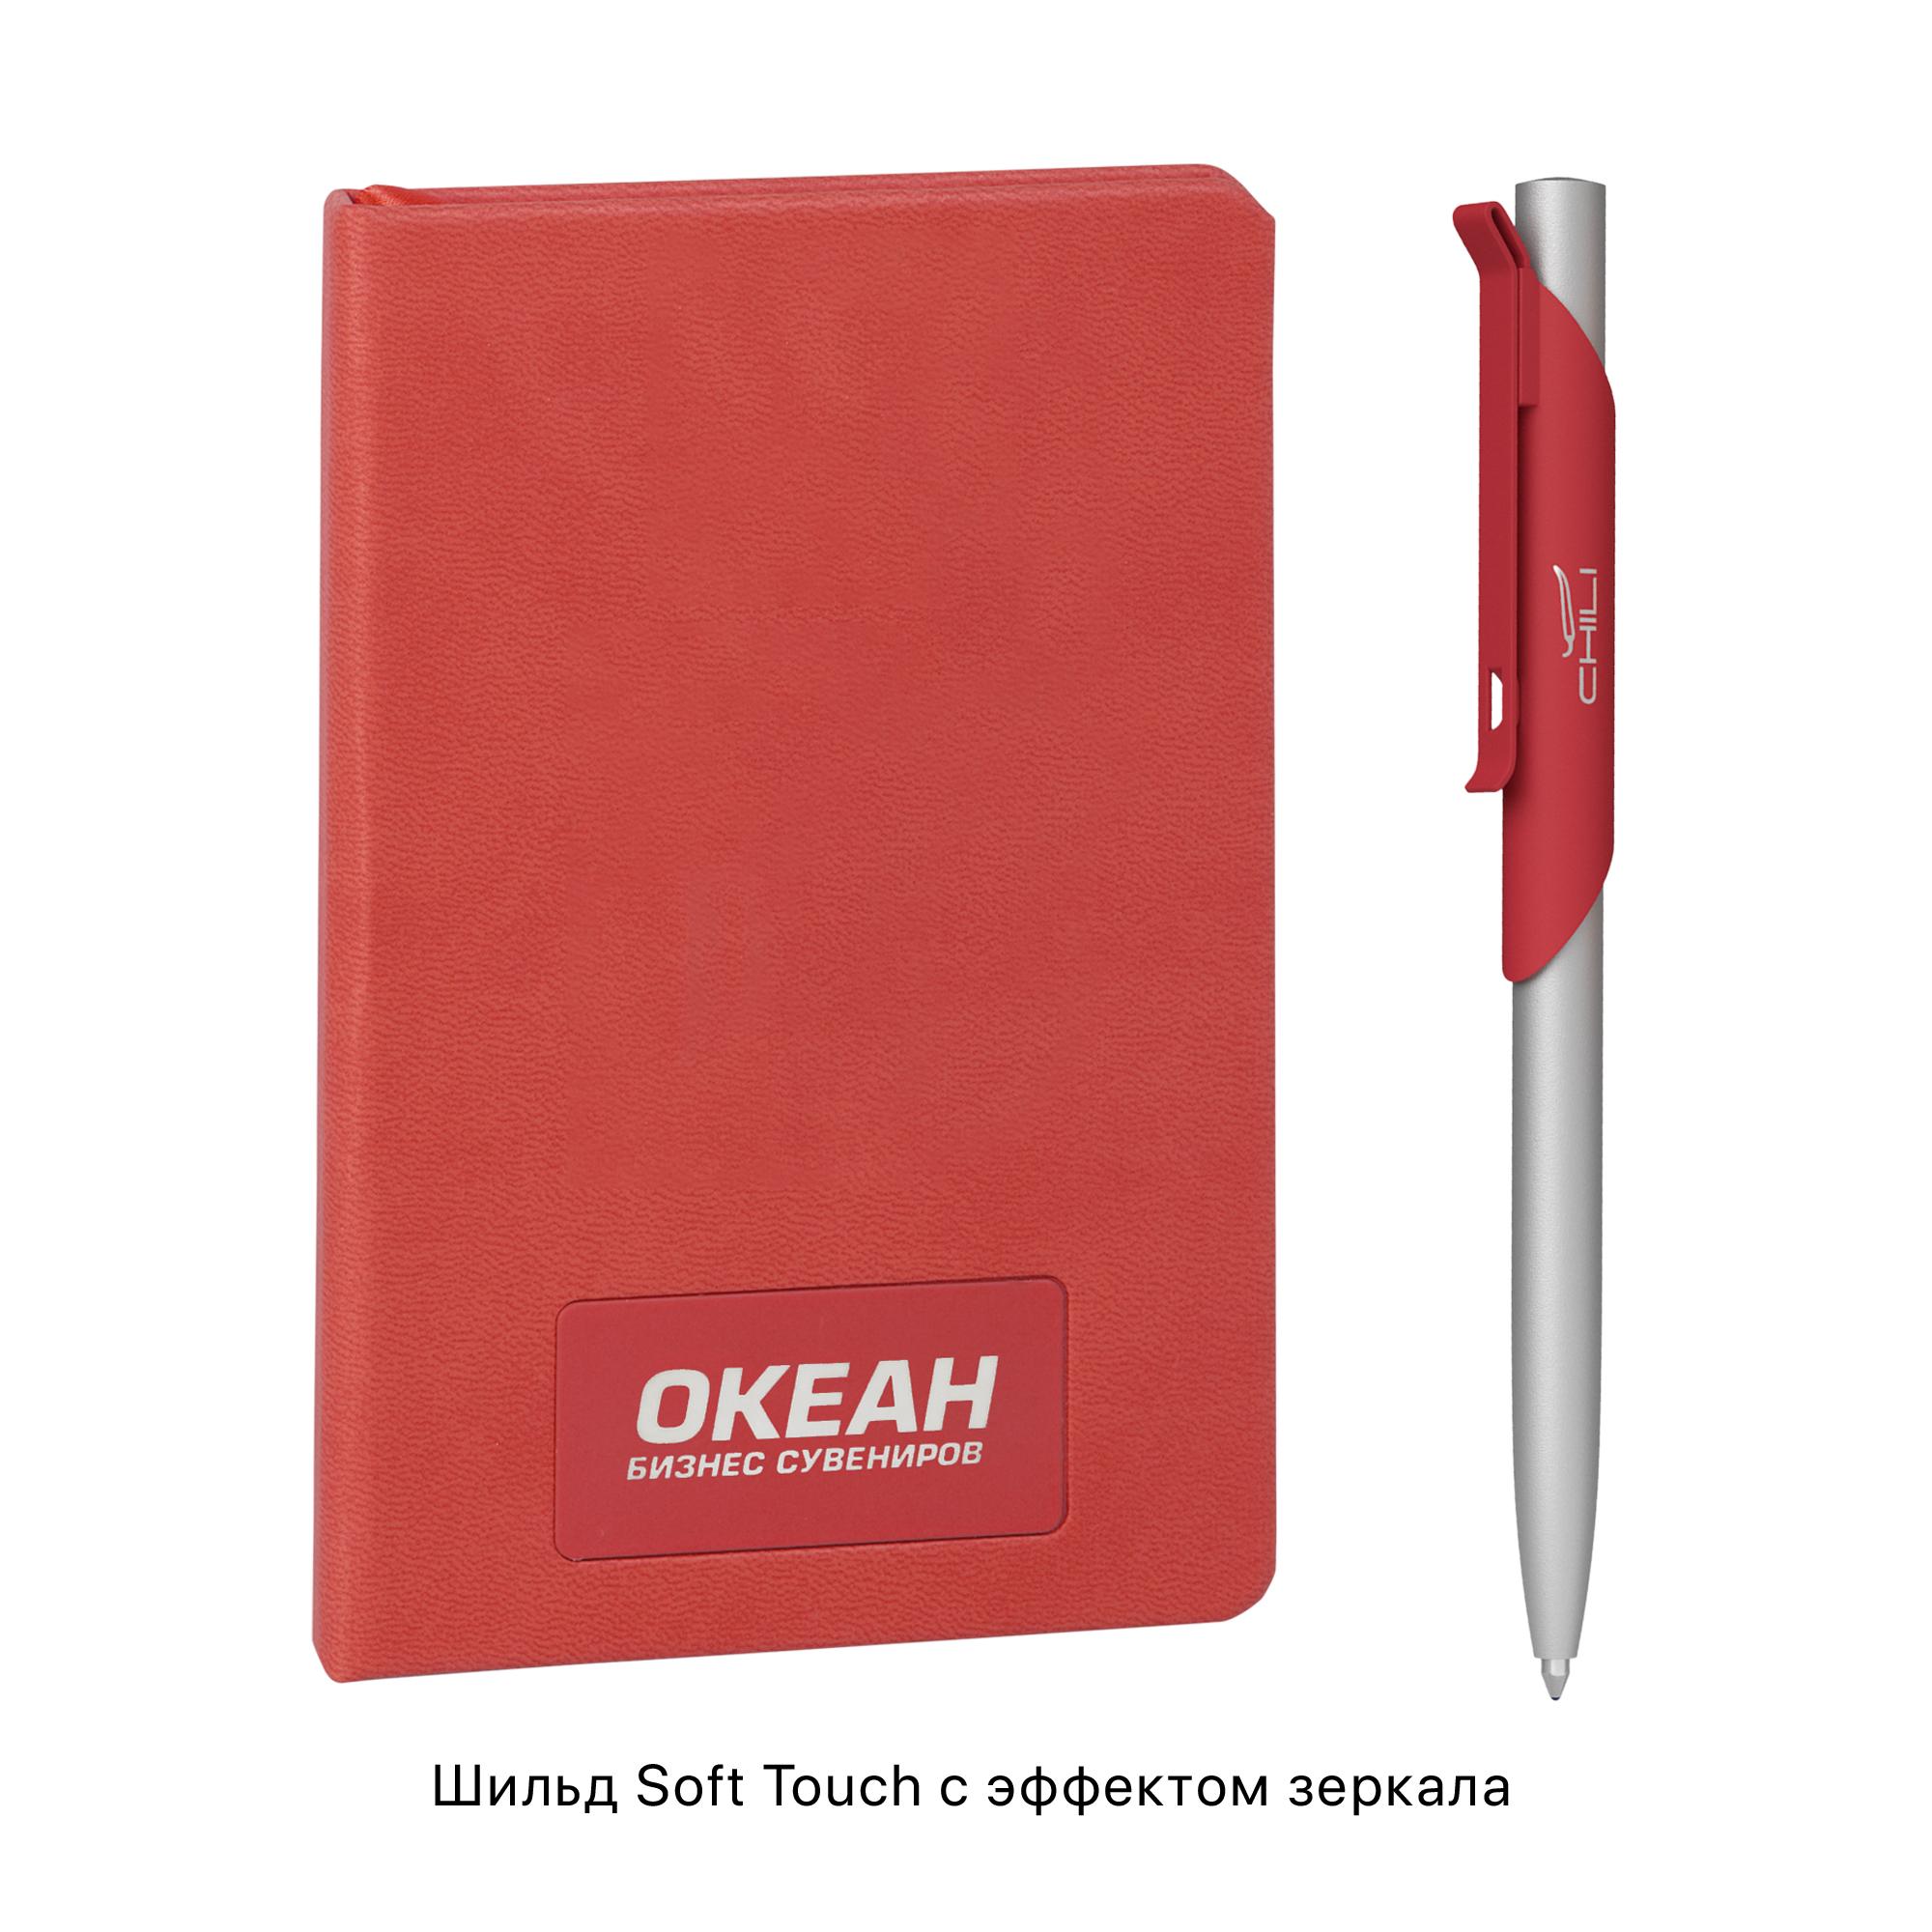 Подарочный набор "Корсика", покрытие soft touch, цвет красный, фото 2